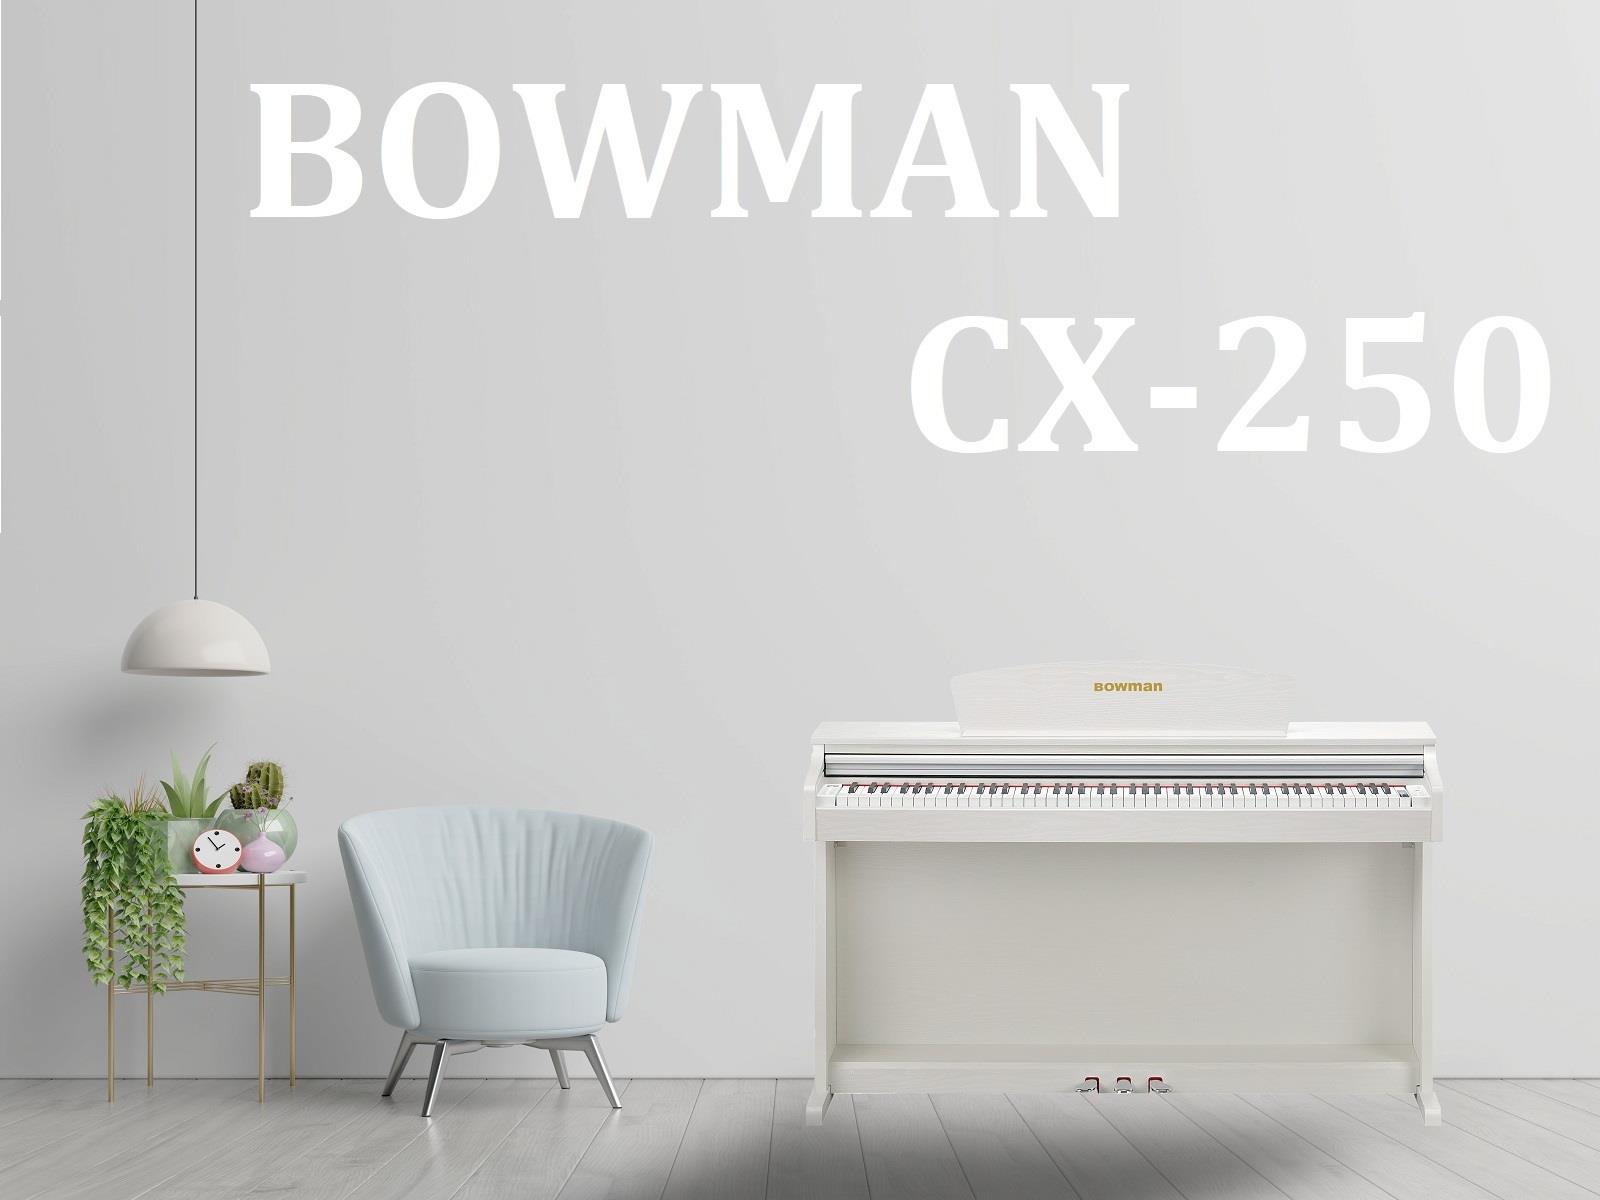 PIANO điện BOWMAN CX250 mang lại sự sang trọng, tinh tế cho không gian - BowmanPIANO.com.vn